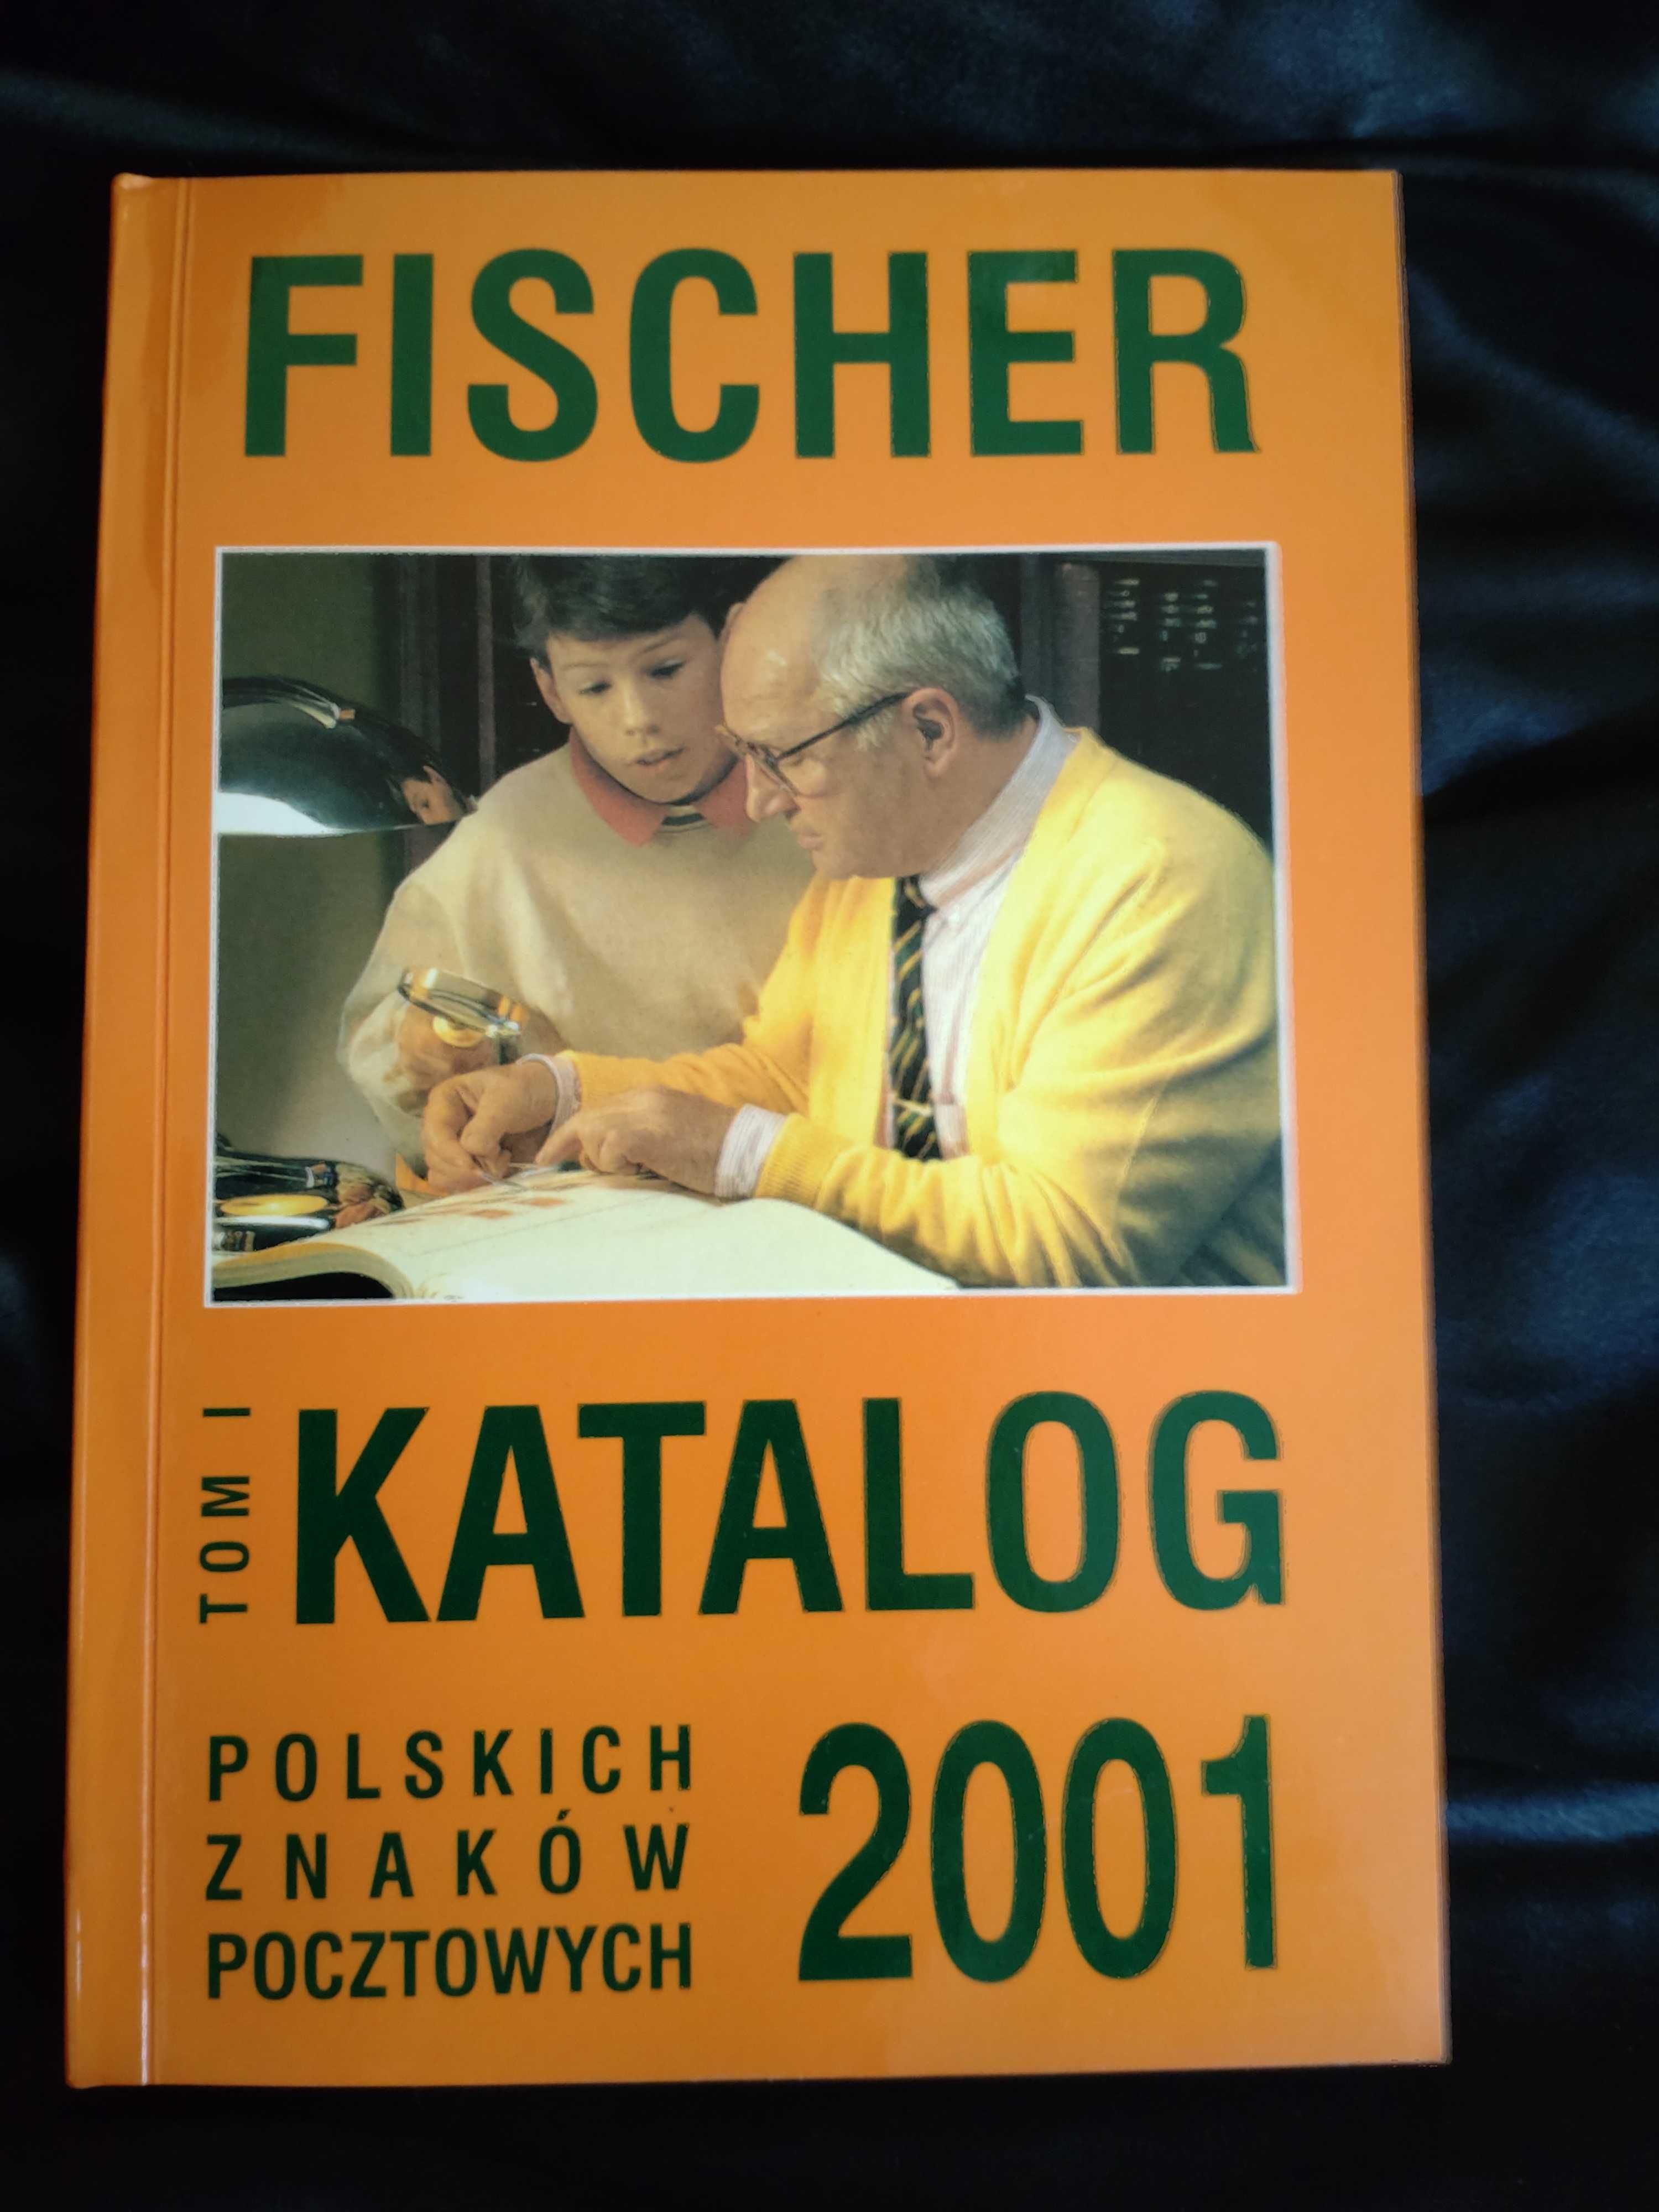 Fischer katalog polskich znaków pocztowych 2001 tom 1